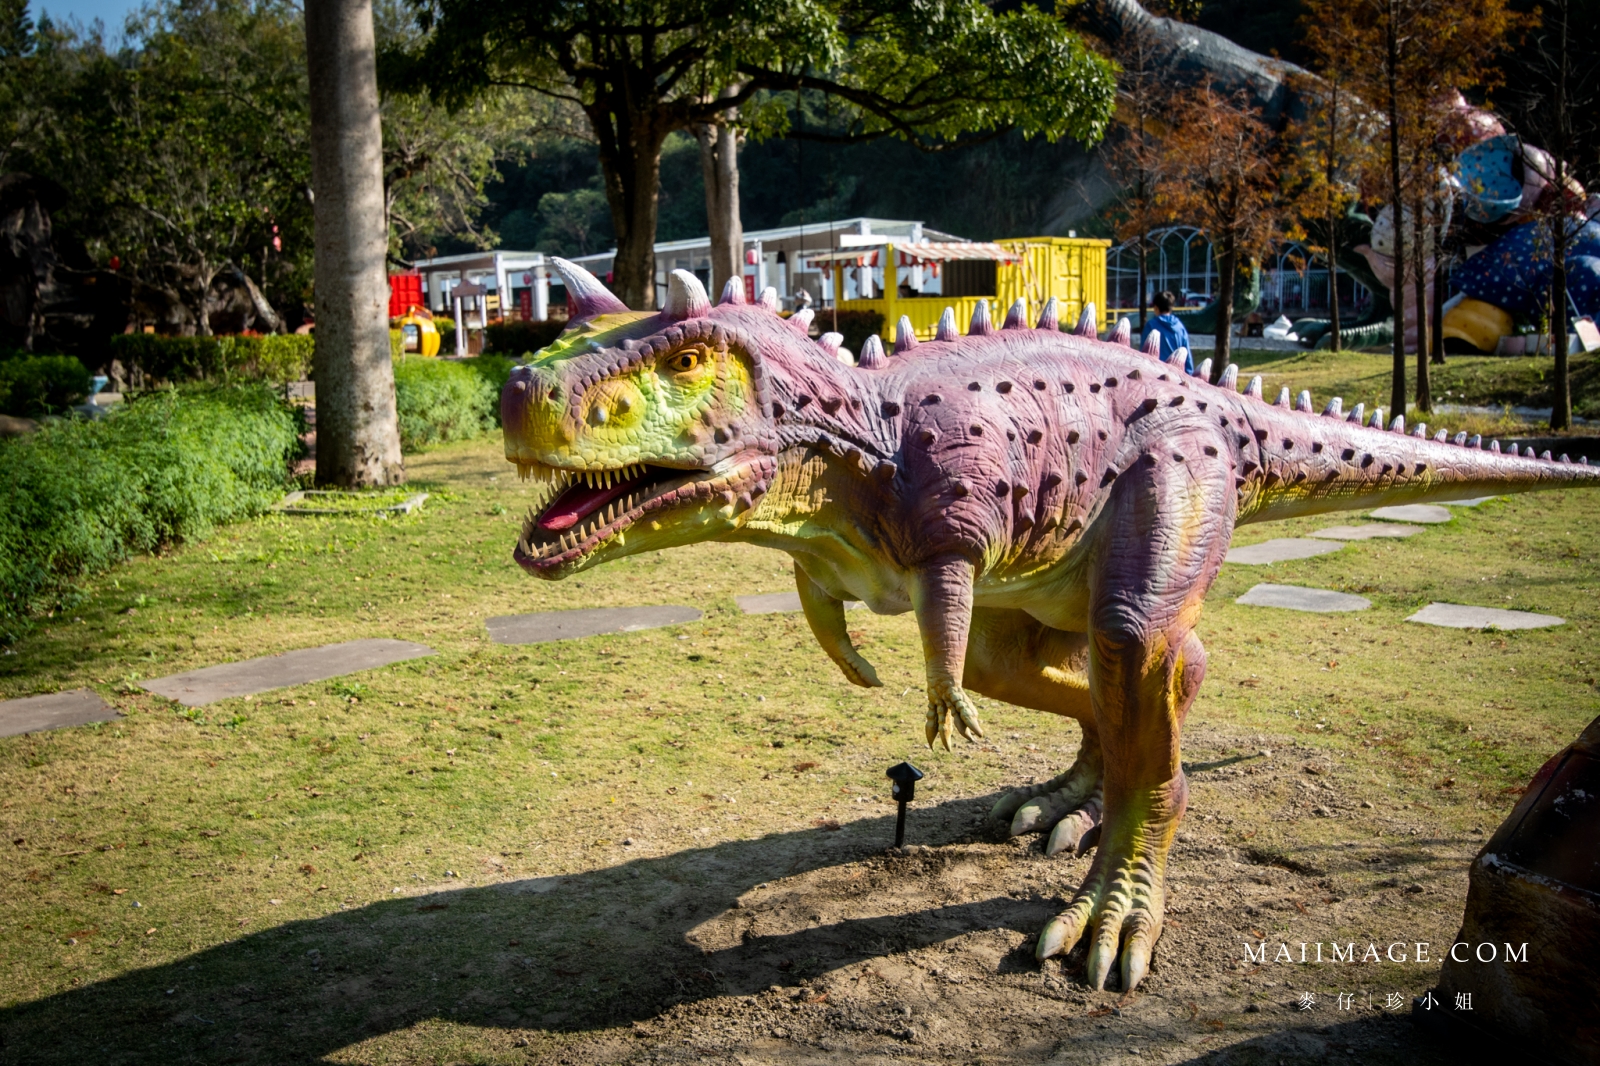 親子旅遊推薦｜全台最吸睛的恐龍主題樂園『HiONE啵比星球』，住合掌屋一秒到日本，享受開門就是巨型恐龍的樂趣！親子旅遊、寵物友善空間